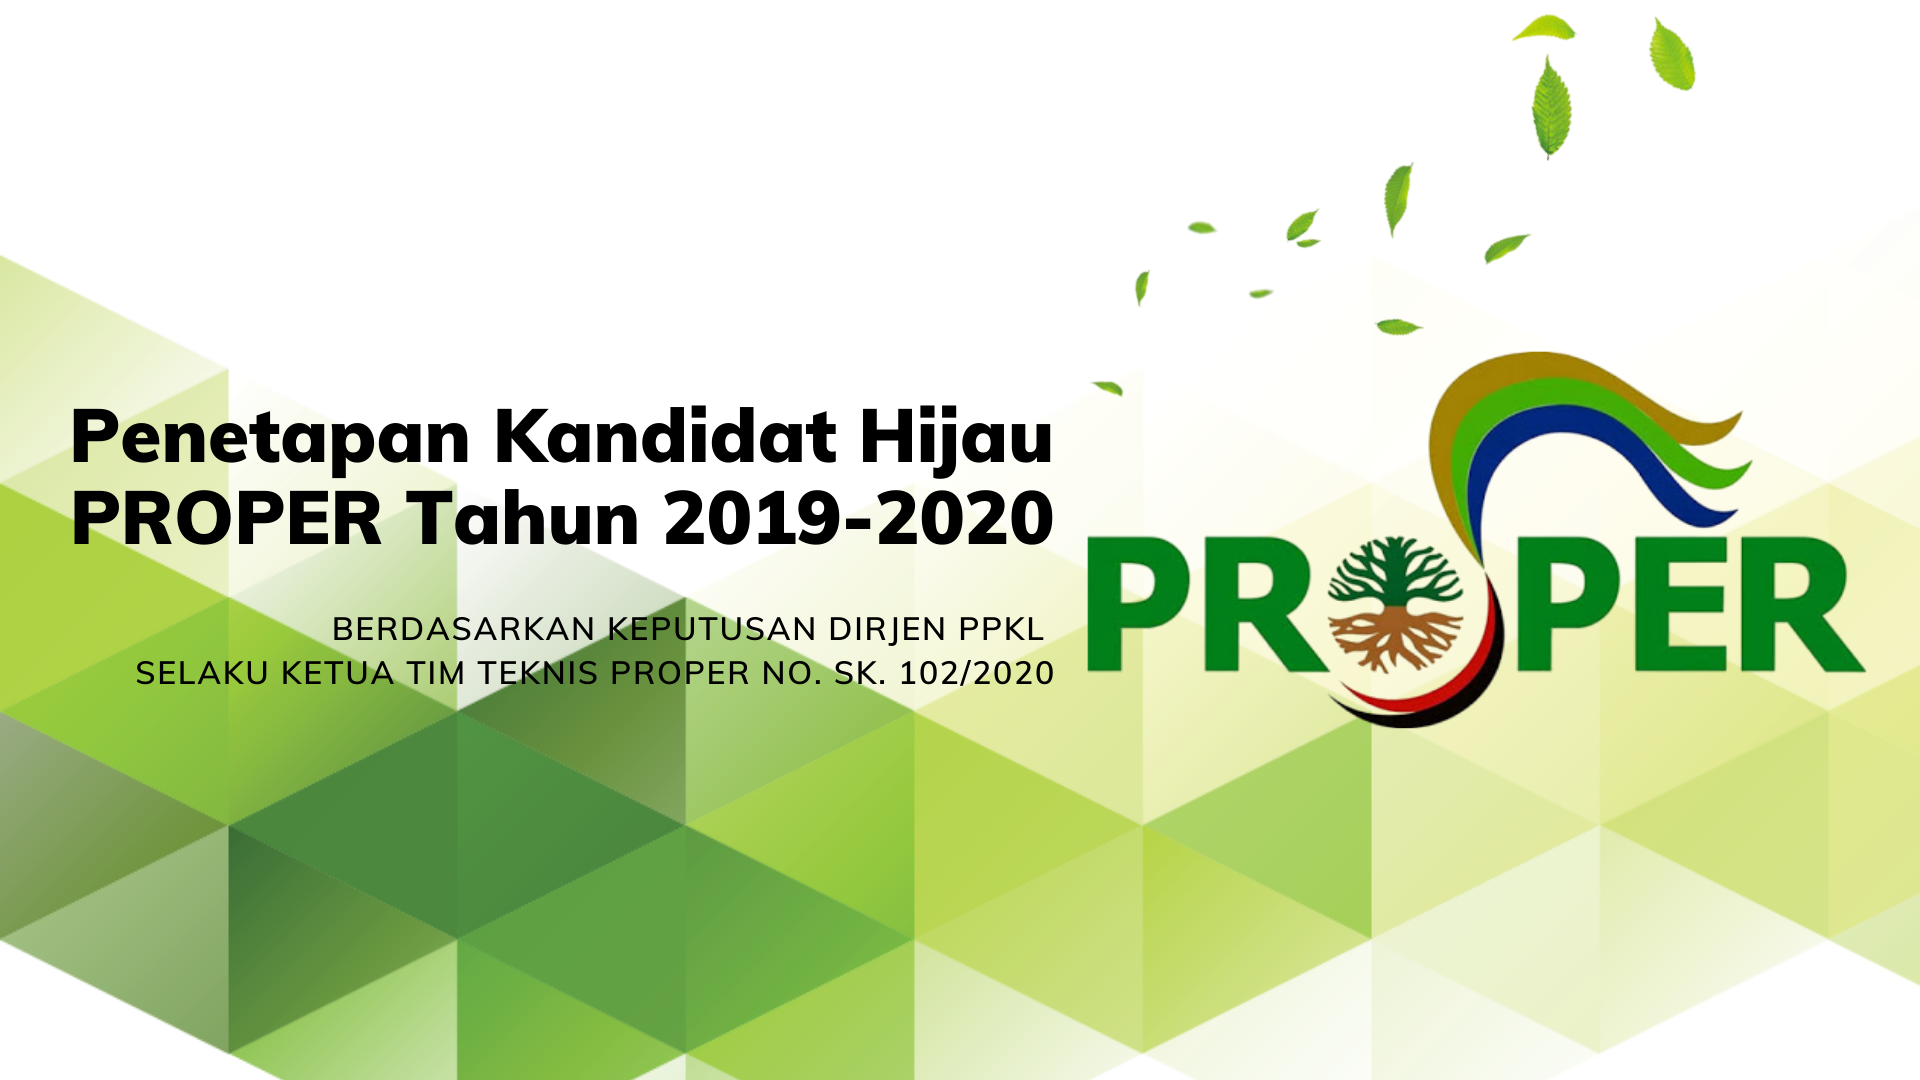 Anggota-anggota APBI-ICMA Masuk Kandidat Peraih PROPER Hijau Tahun 2019-2020 Dengan Nilai Di Atas Rata-rata